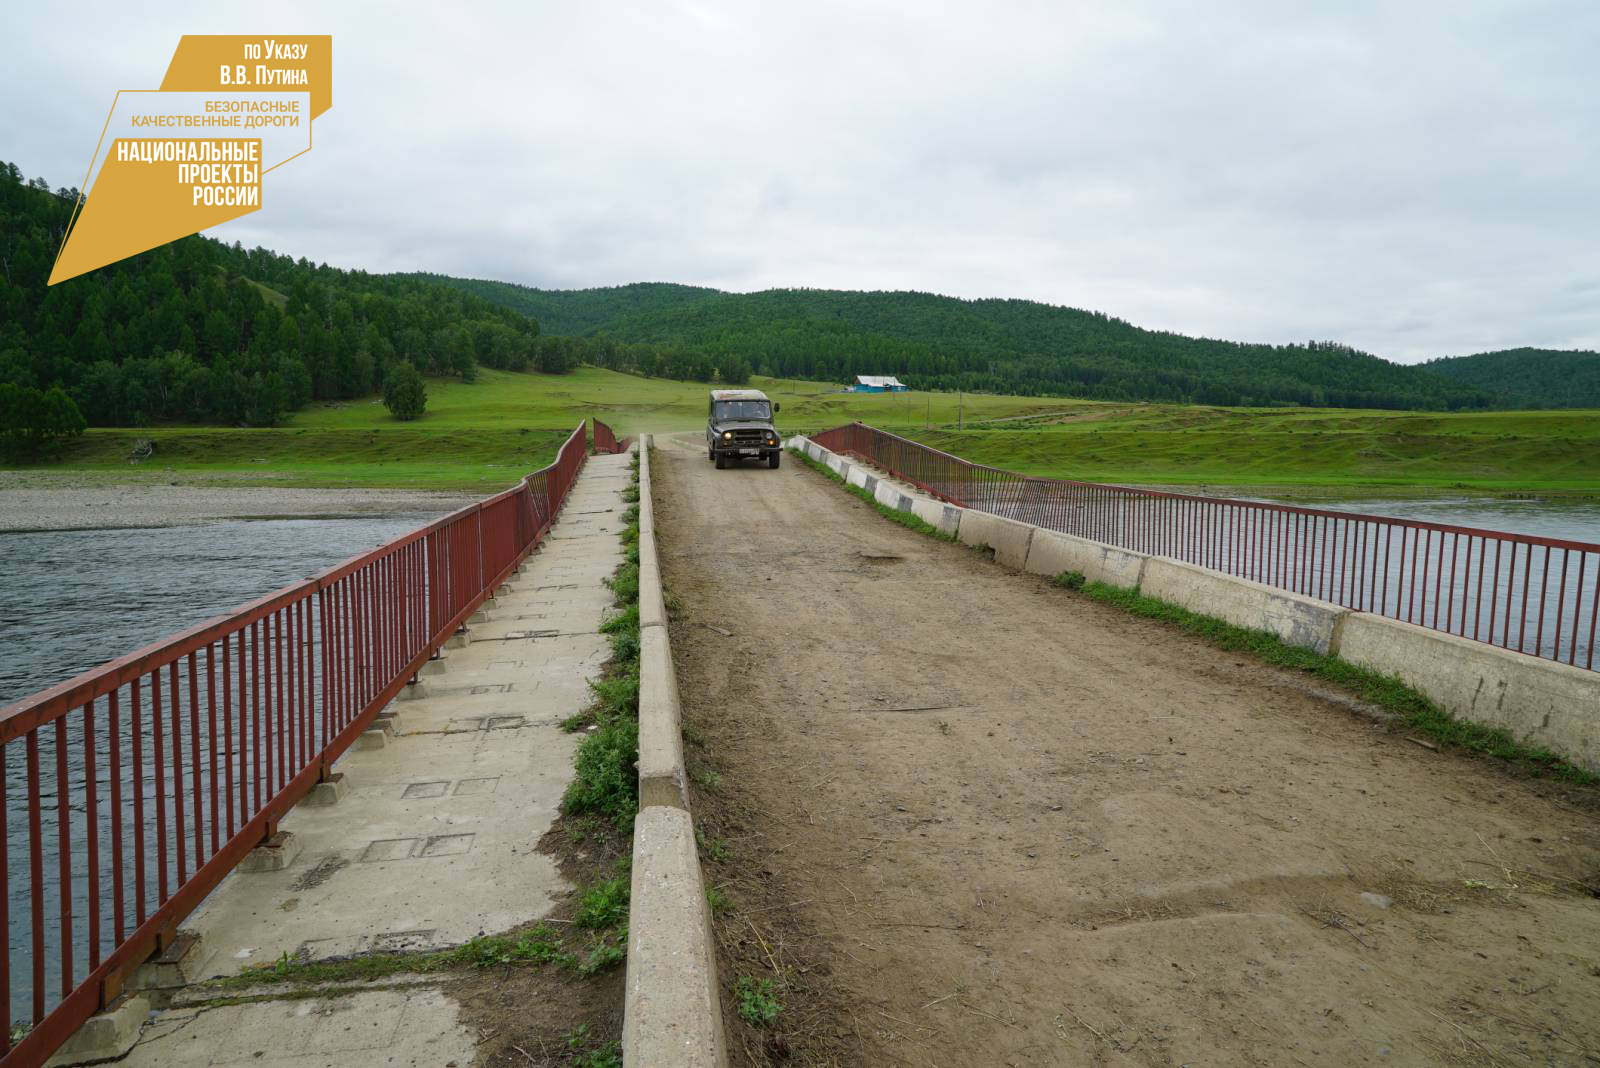 В Закаменском районе Бурятии в с. Михайловка отремонтируют мост через реку Джида.